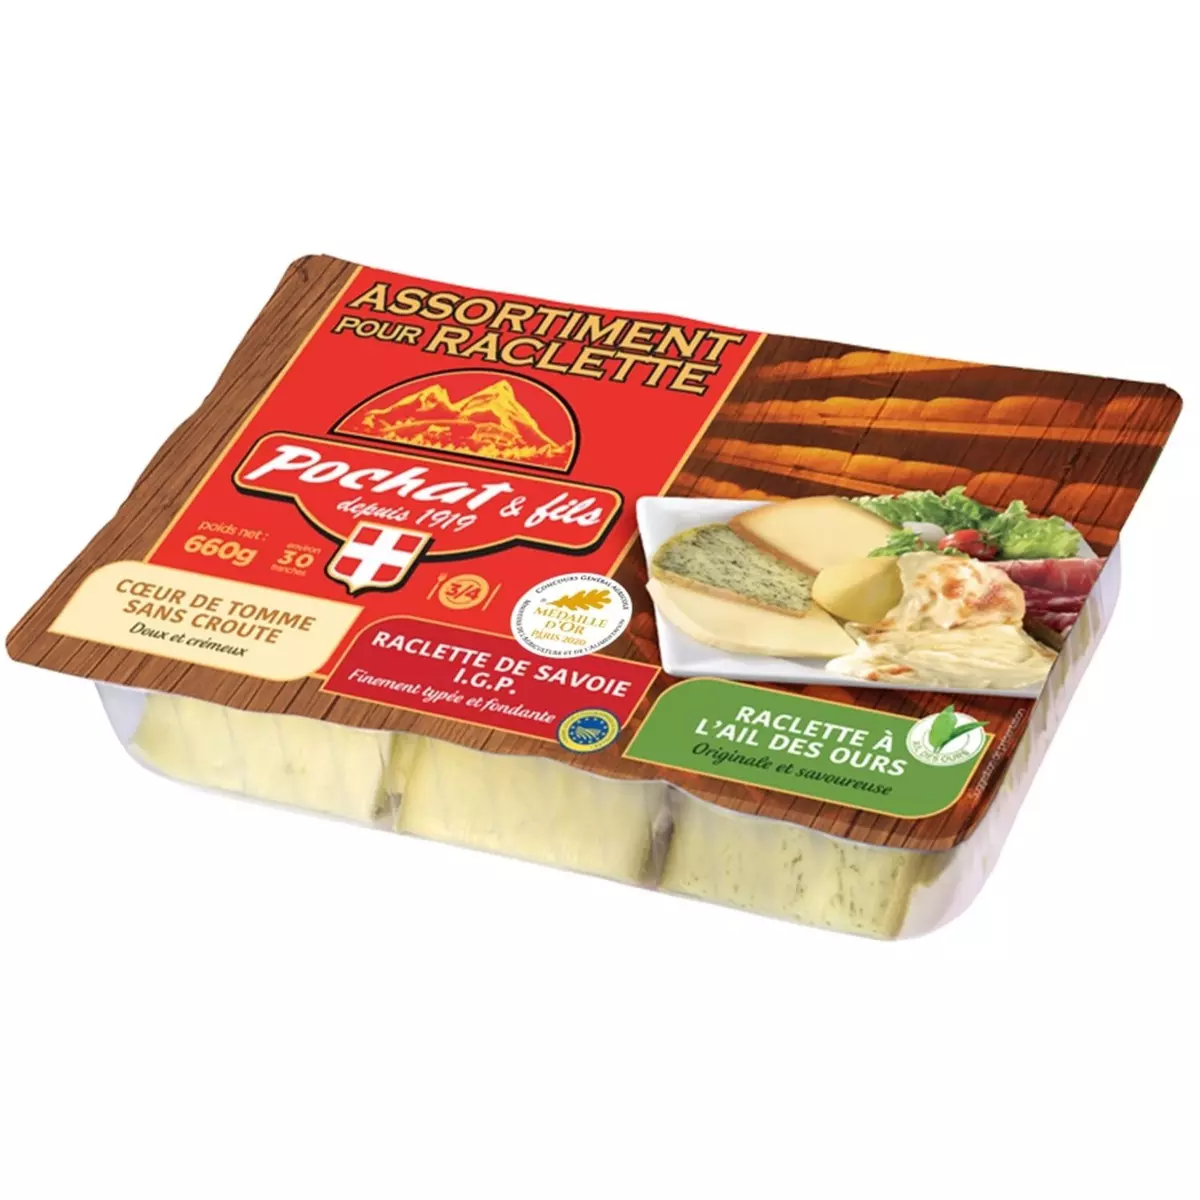 POCHAT & FILS Assortiment de fromage à raclette de Savoie coeur de tomme et ail des ours 30 tranches environ 600g